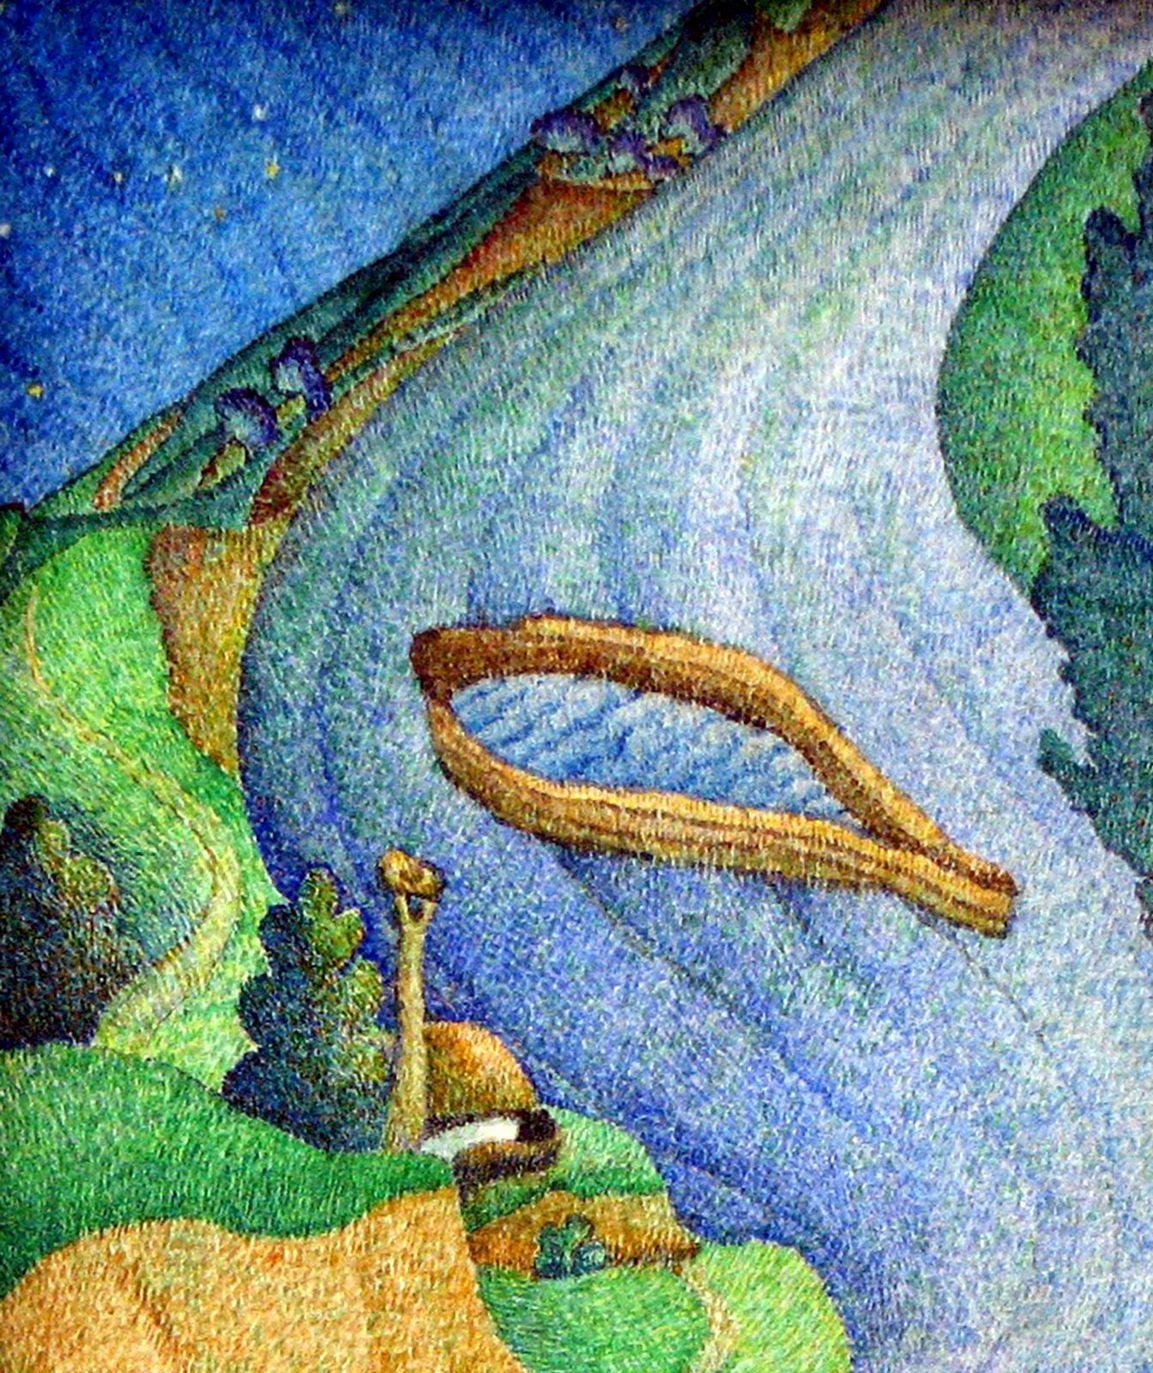 Künstler: Warwarow Anatoli Viktorowitsch
Titel: Ein Boot fährt, allein hinter dem Wasser,
Größe: 6,5x4,5 Zoll, (16x12 cm)
Medium: Aquarell Papier,
Handbemalt, original, einmalig, hängefertig

Dieses Ölgemälde mit dem Titel 